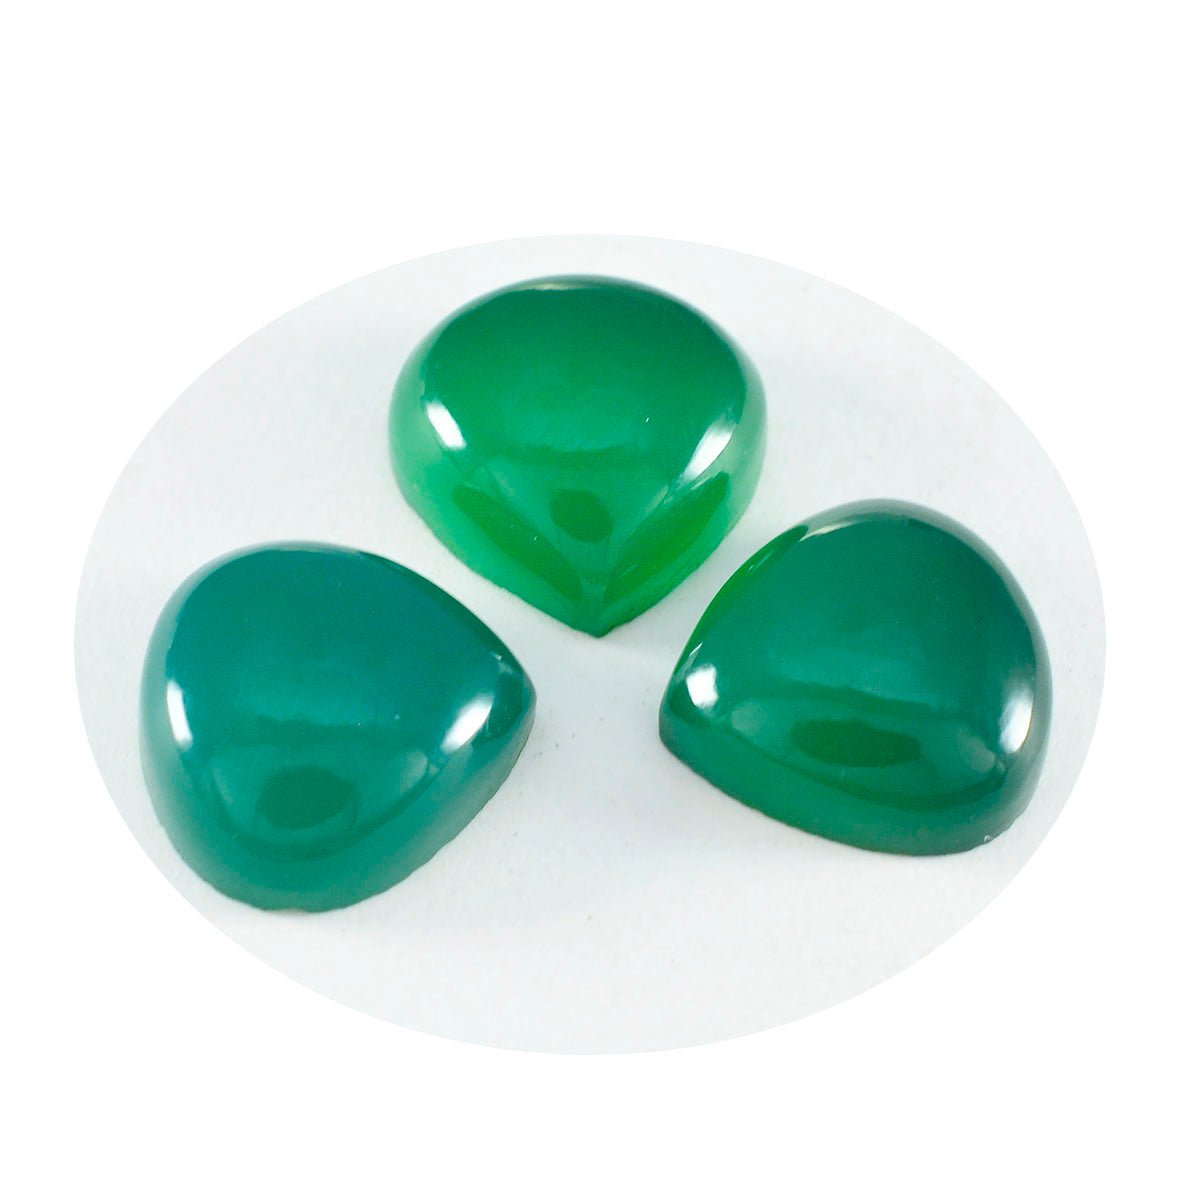 Riyogems 1 pieza cabujón de ónix verde 14X14mm forma de corazón piedra suelta de calidad increíble